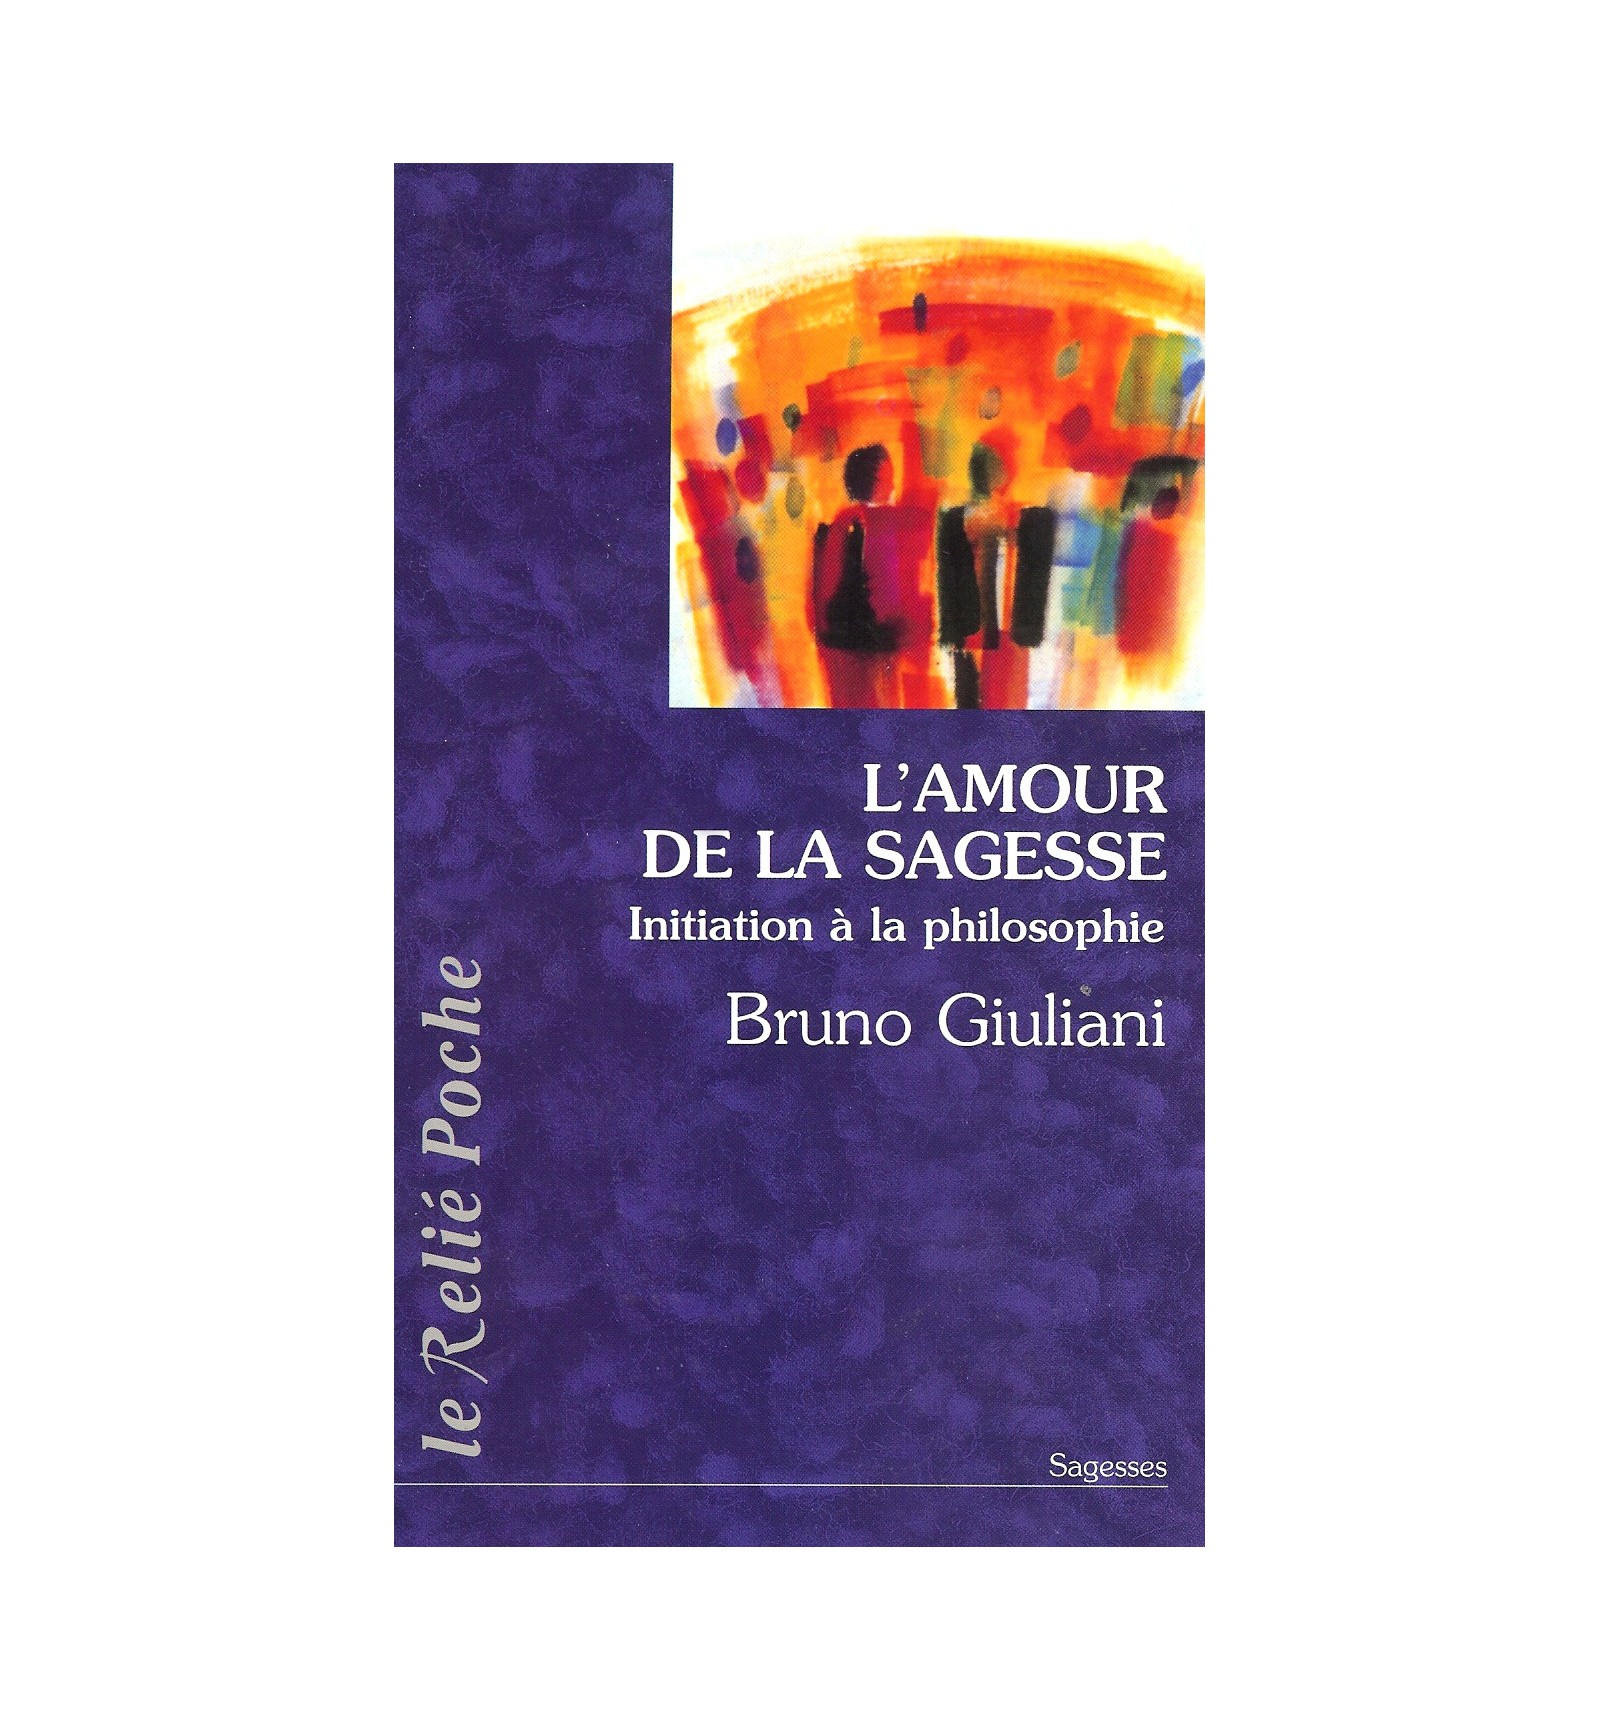 L’amour de la sagesse - Bruno Giuliani